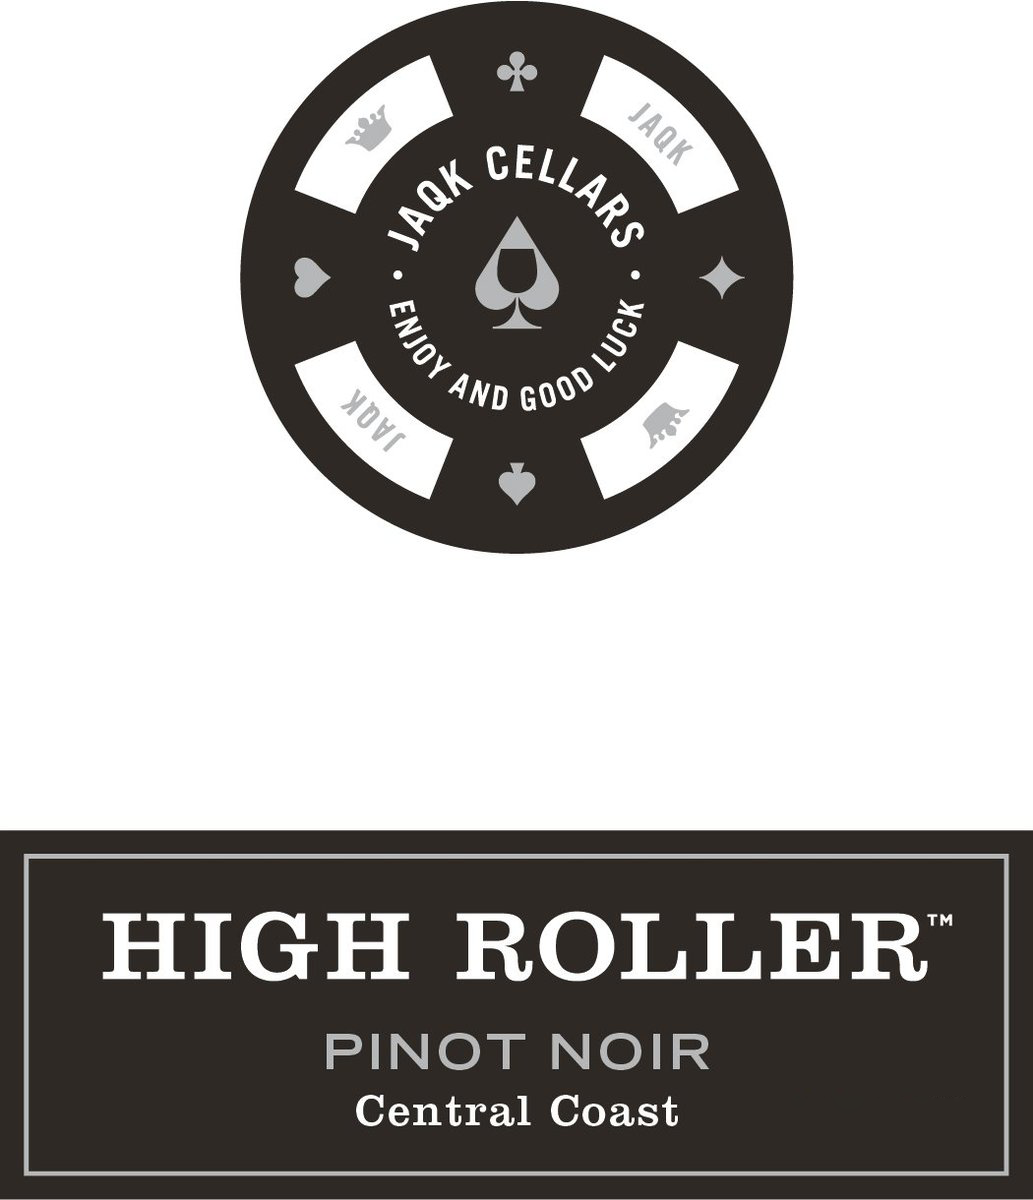 Jaqk Cellars High Roller Pinot Noir Central Coast 2018